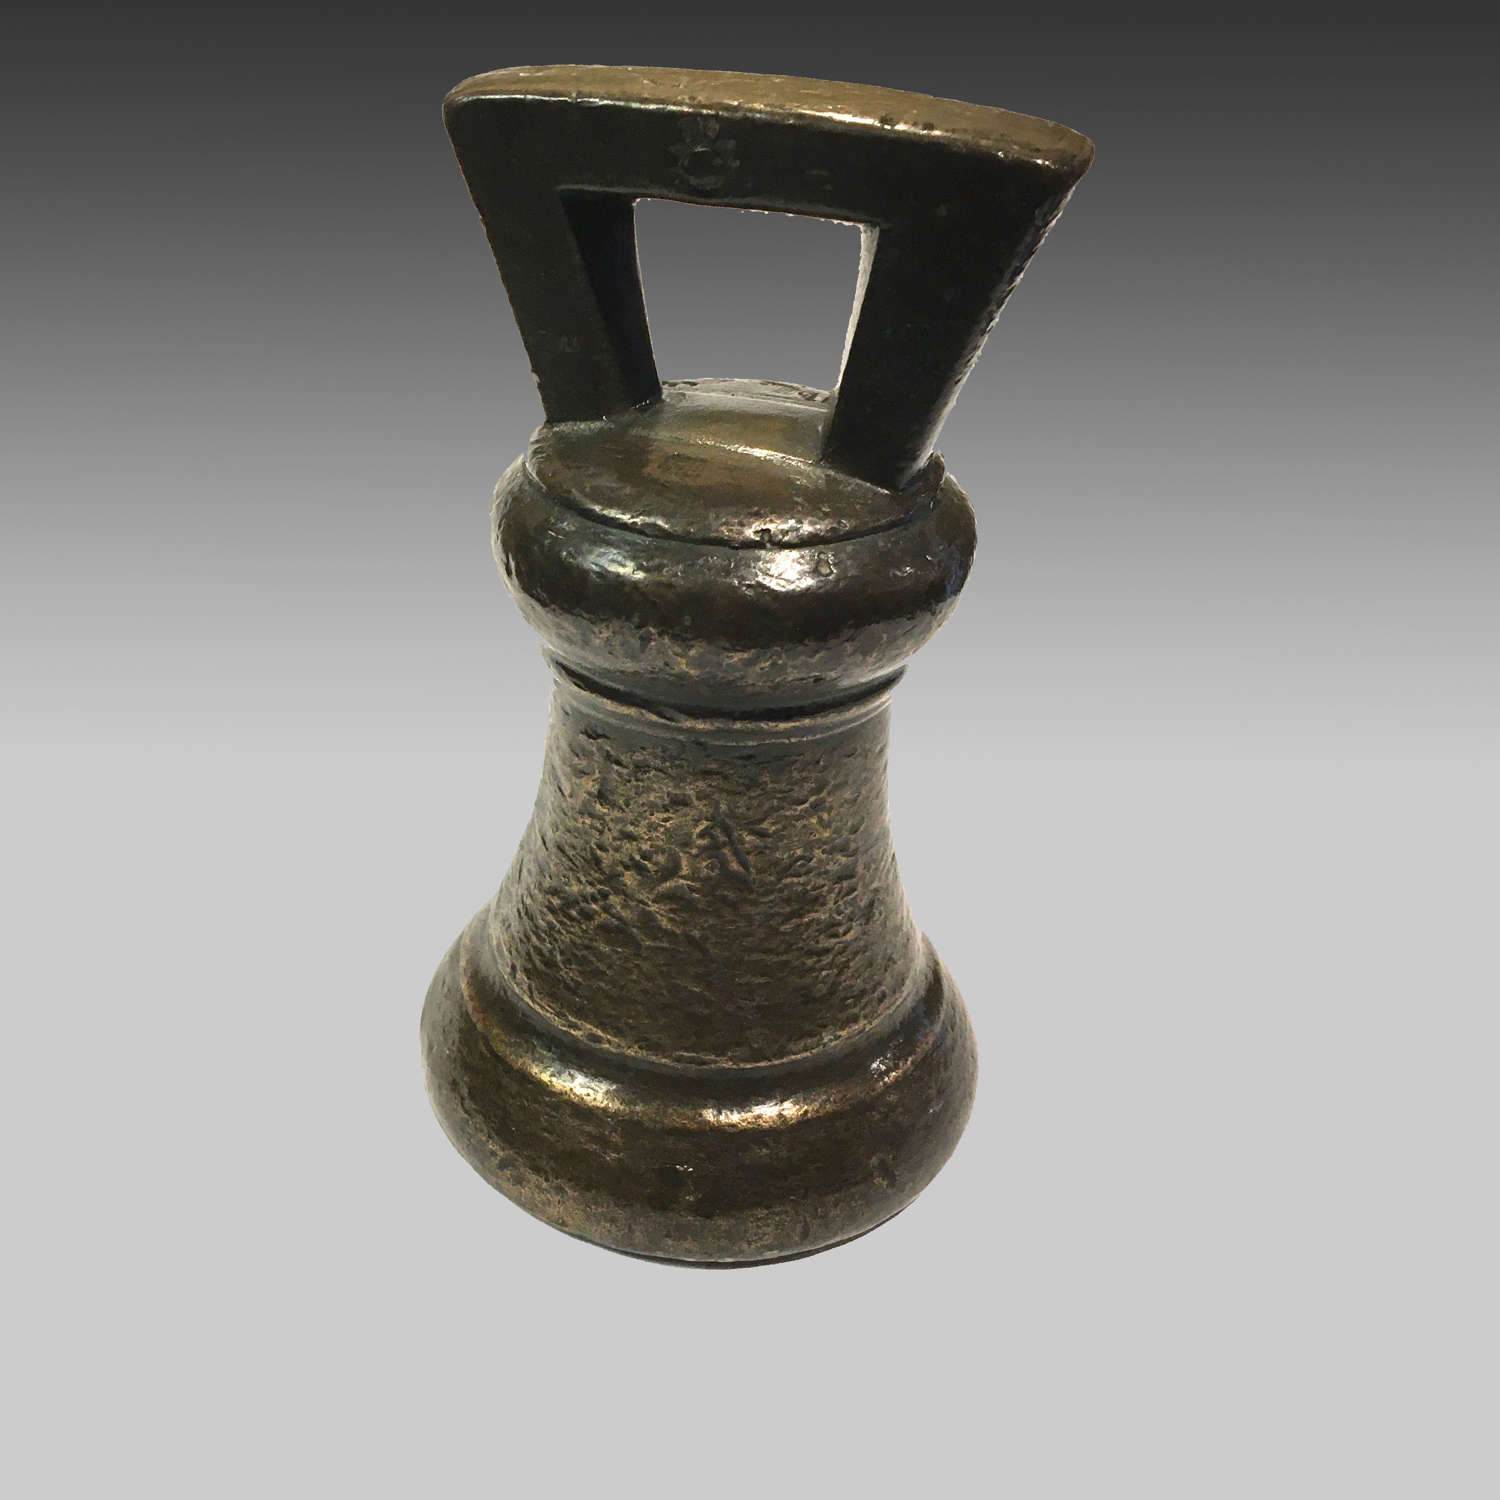 Georgian bronze 14lb. bottle weight